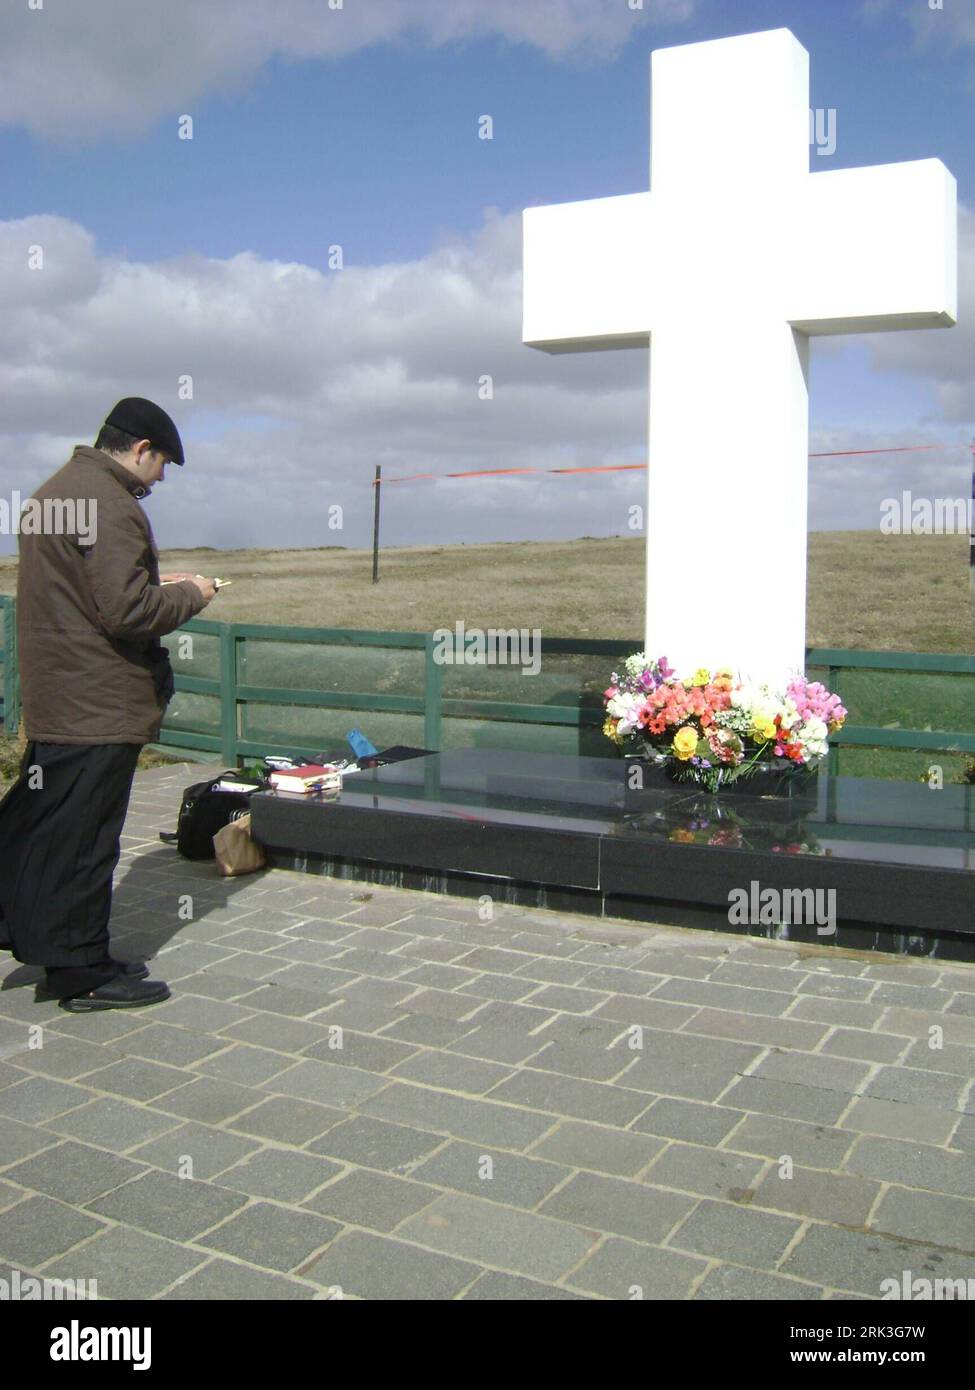 Bildnummer: 53506443  Datum: 03.10.2009  Copyright: imago/Xinhua (091005) -- MALVINAS, Oct. 5, 2009 (Xinhua) -- A relative of the deceased Argentine soldier of the 1982 Malvinas War mourns at a cemetery on Port Stanley, Malvinas, on Oct. 3, 2009. (Xinhua/Juan Manuel Nievas)(zx) (2)MALVINAS-MALVINAS WAR-COMMEMORATION PUBLICATIONxNOTxINxCHN Argentinien Gedenken Krieg Opfer Kriegsopfer Gefallene FRiedhof kbdig xub 2009 hoch     Bildnummer 53506443 Date 03 10 2009 Copyright Imago XINHUA  Malvinas OCT 5 2009 XINHUA a relative of The deceased Argentine Soldier of The 1982 Malvinas was  AT a Cemetery Stock Photo